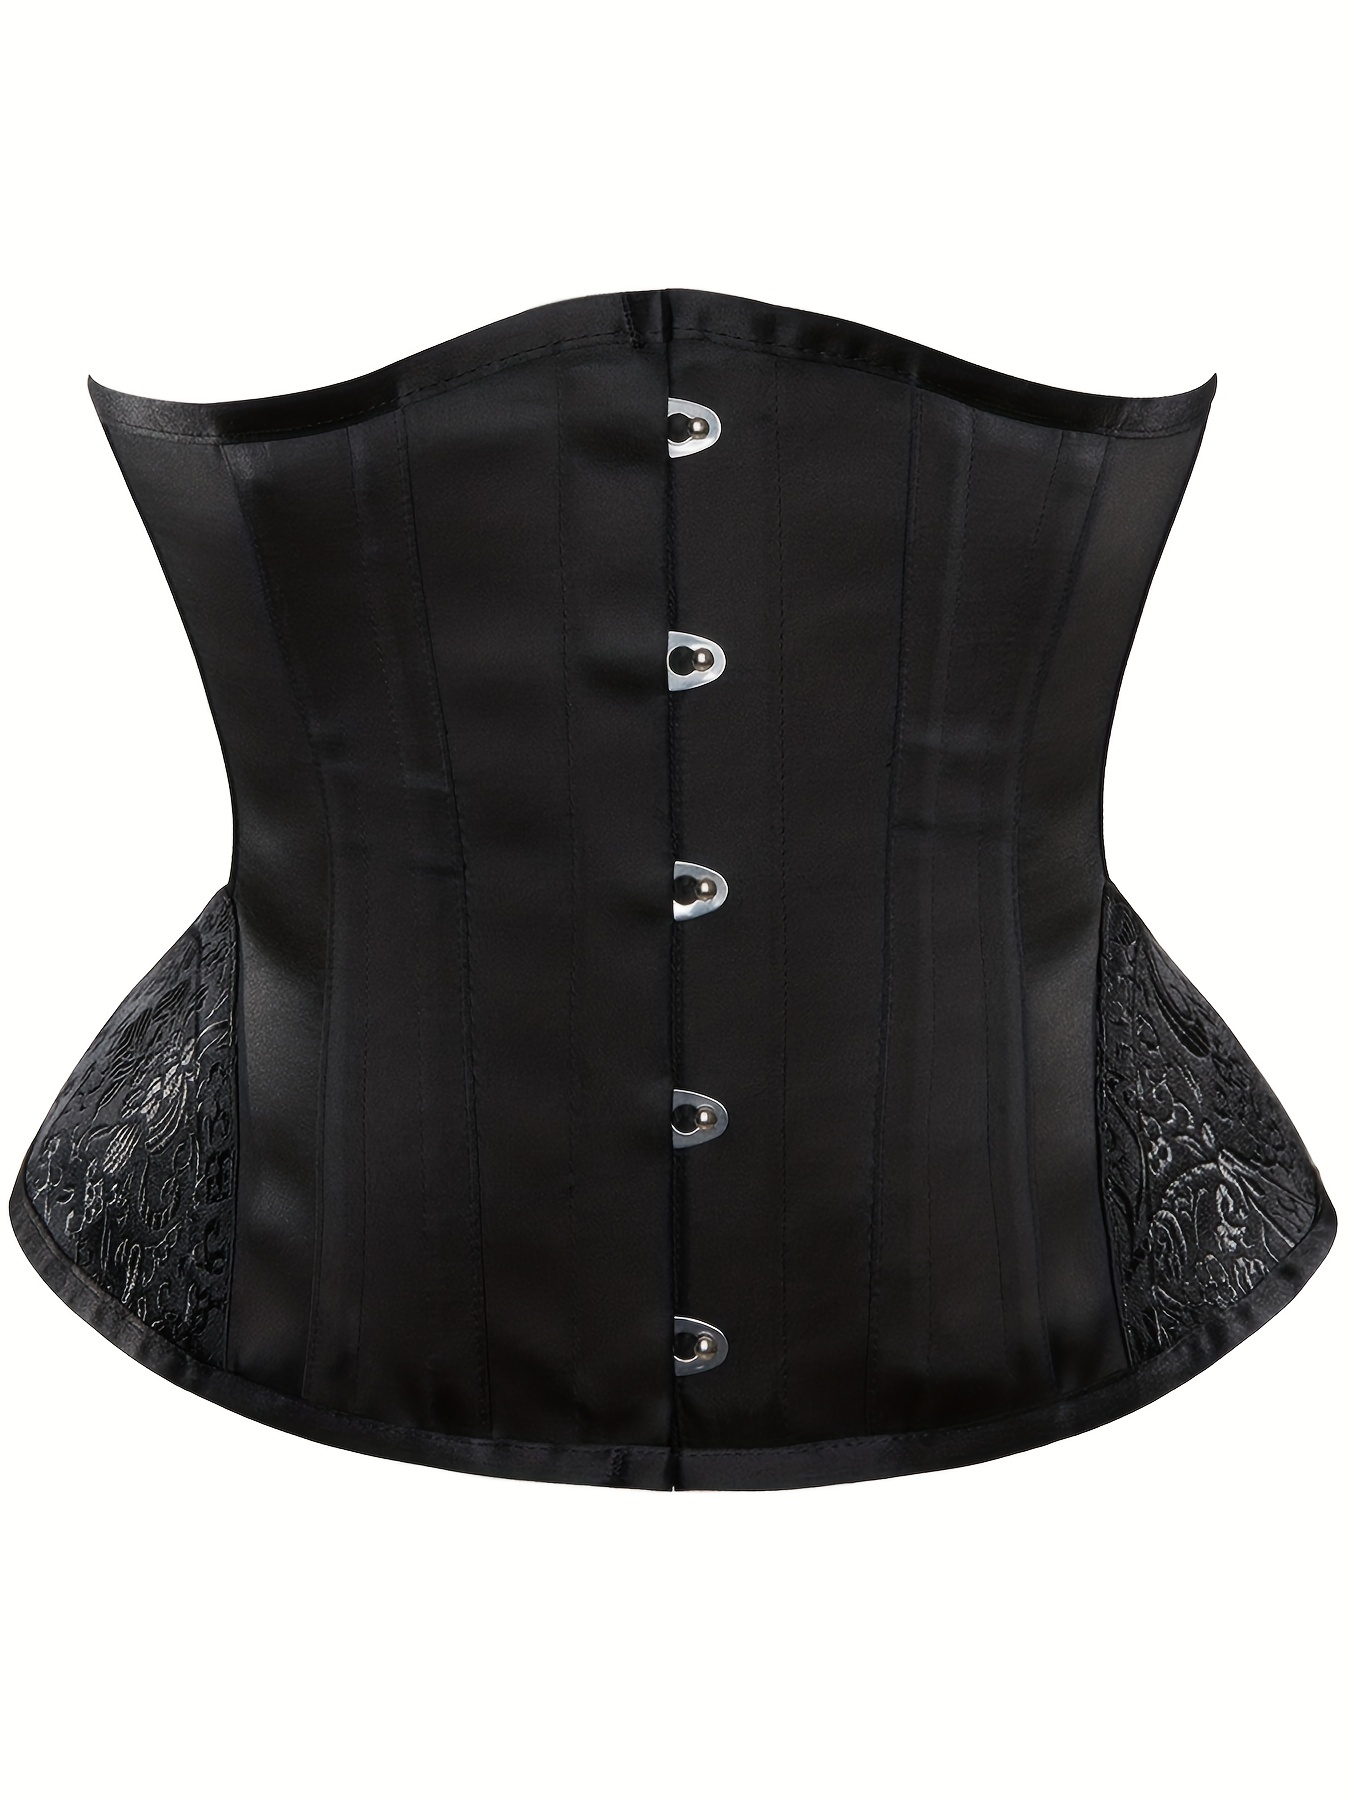 Women Striped Underbust Corset Vest Plus Size Gothic Corsets Bustiers  Lingerie Top Body Shaper